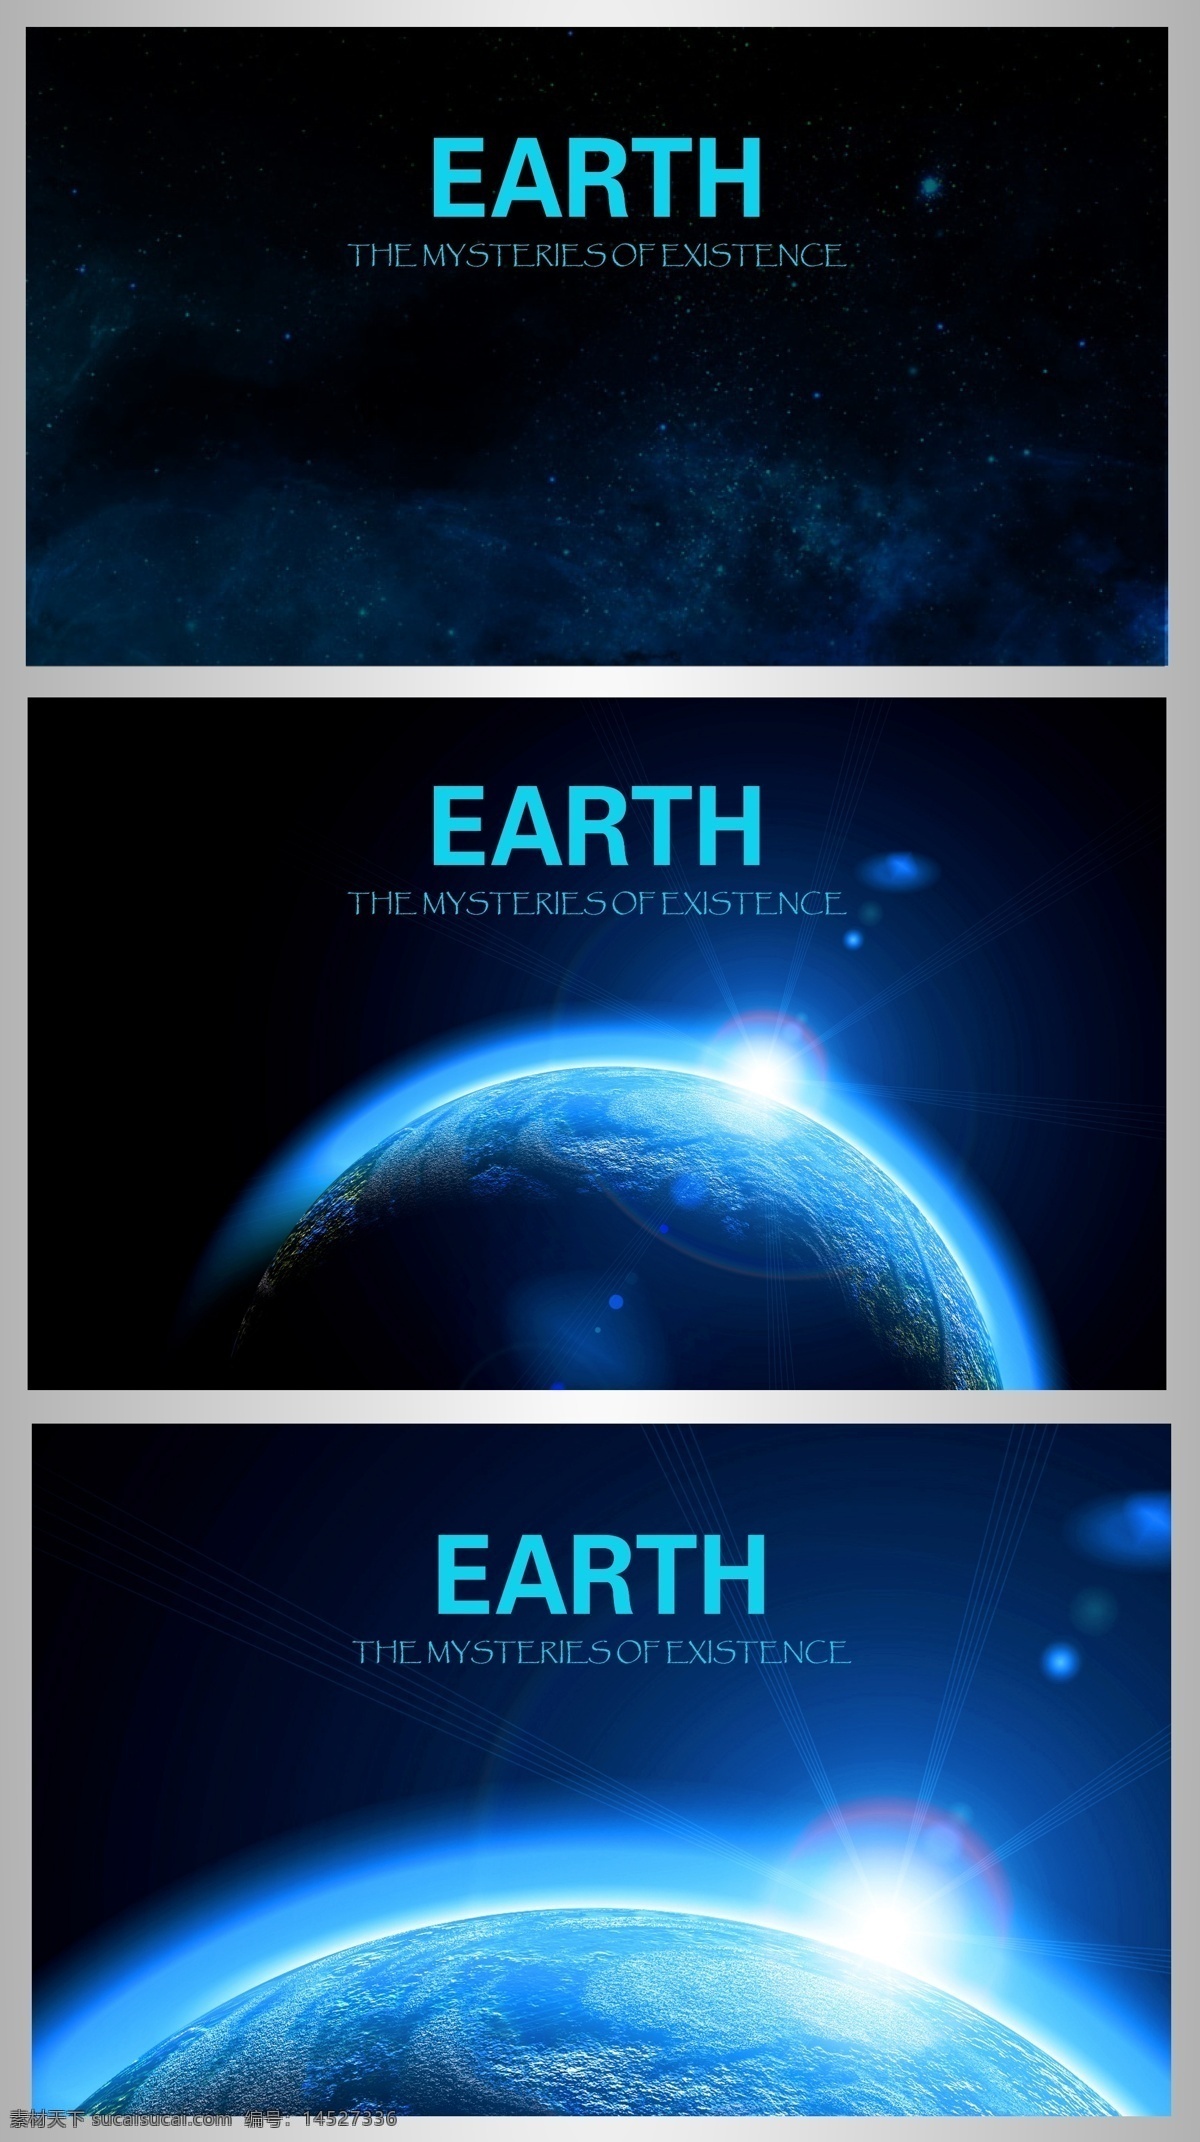 宇宙 地球 创意 卡片 海洋 创意卡片 蓝色 陆地 行星 卡片设计 矢量素材